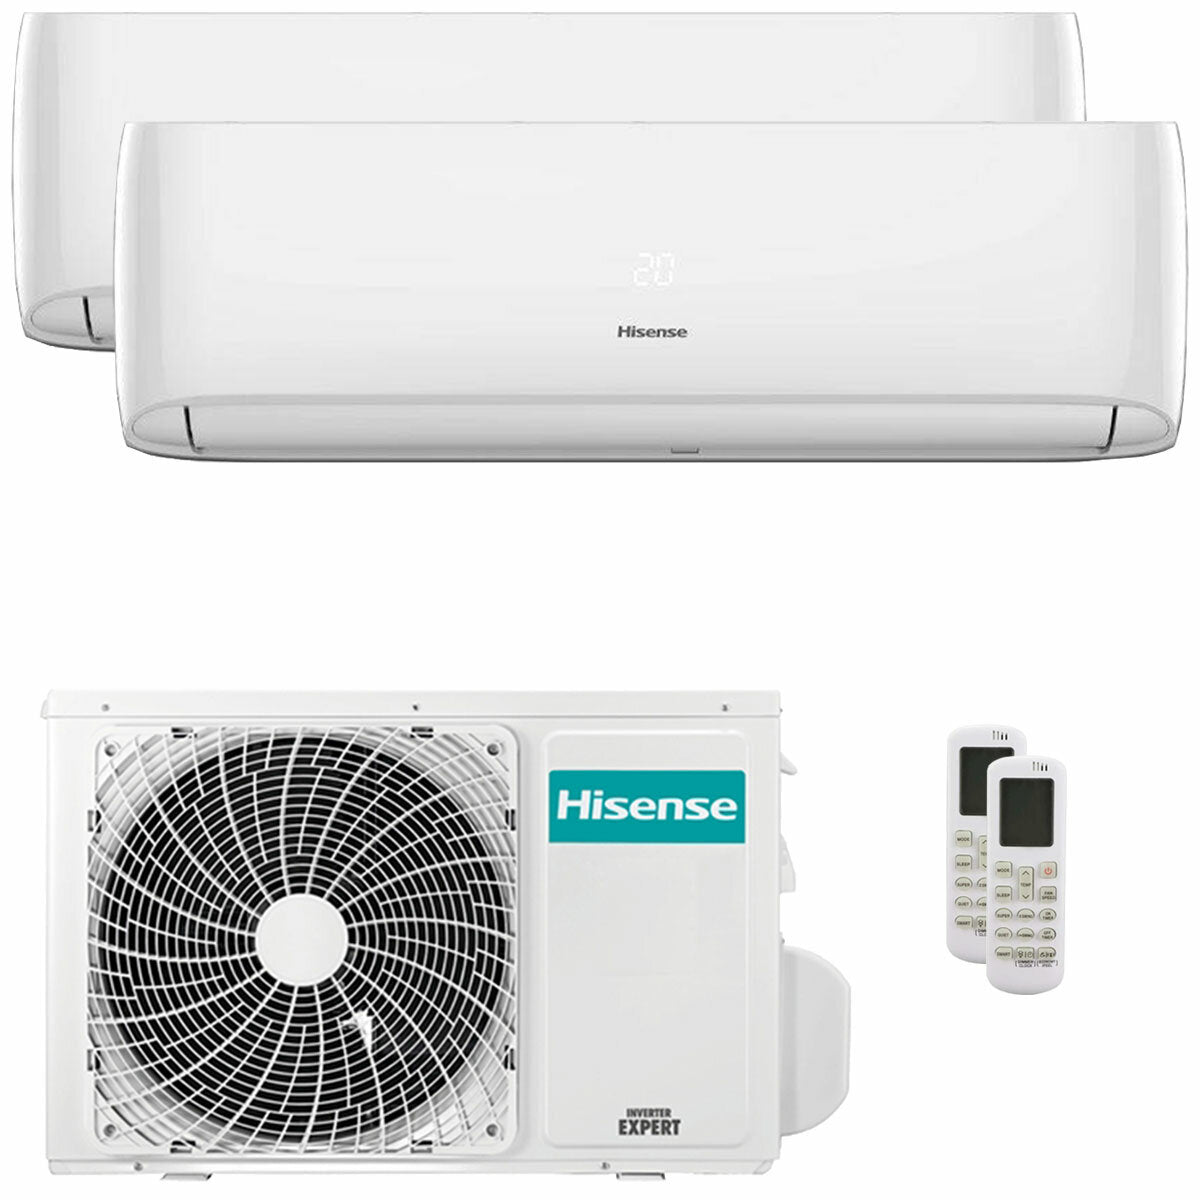 Hisense Hi-Comfort climatiseur double split 12000+12000 BTU onduleur A++ wifi unité extérieure 5,5 kW